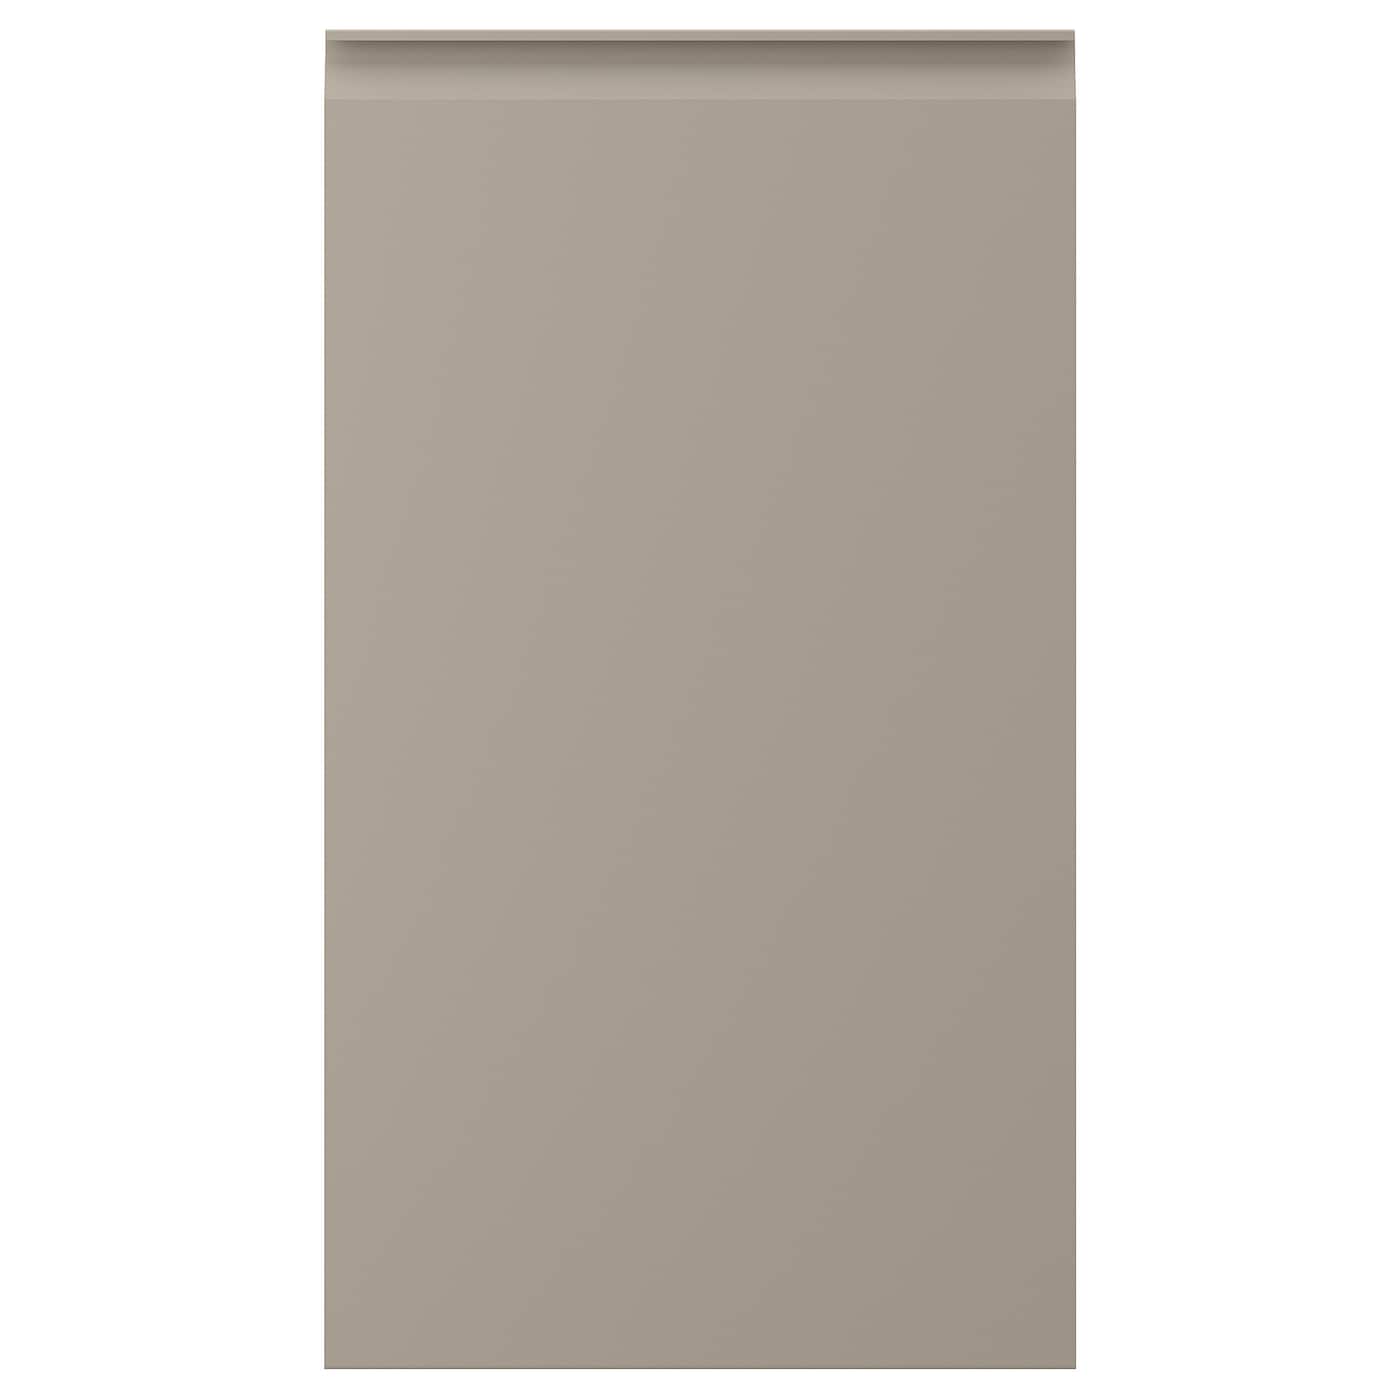 Передняя панель для посудомоечной машины - UPPLÖV /UPPLОV  IKEA/ УППЛЁВ  ИКЕА, 45х80 см, коричневый